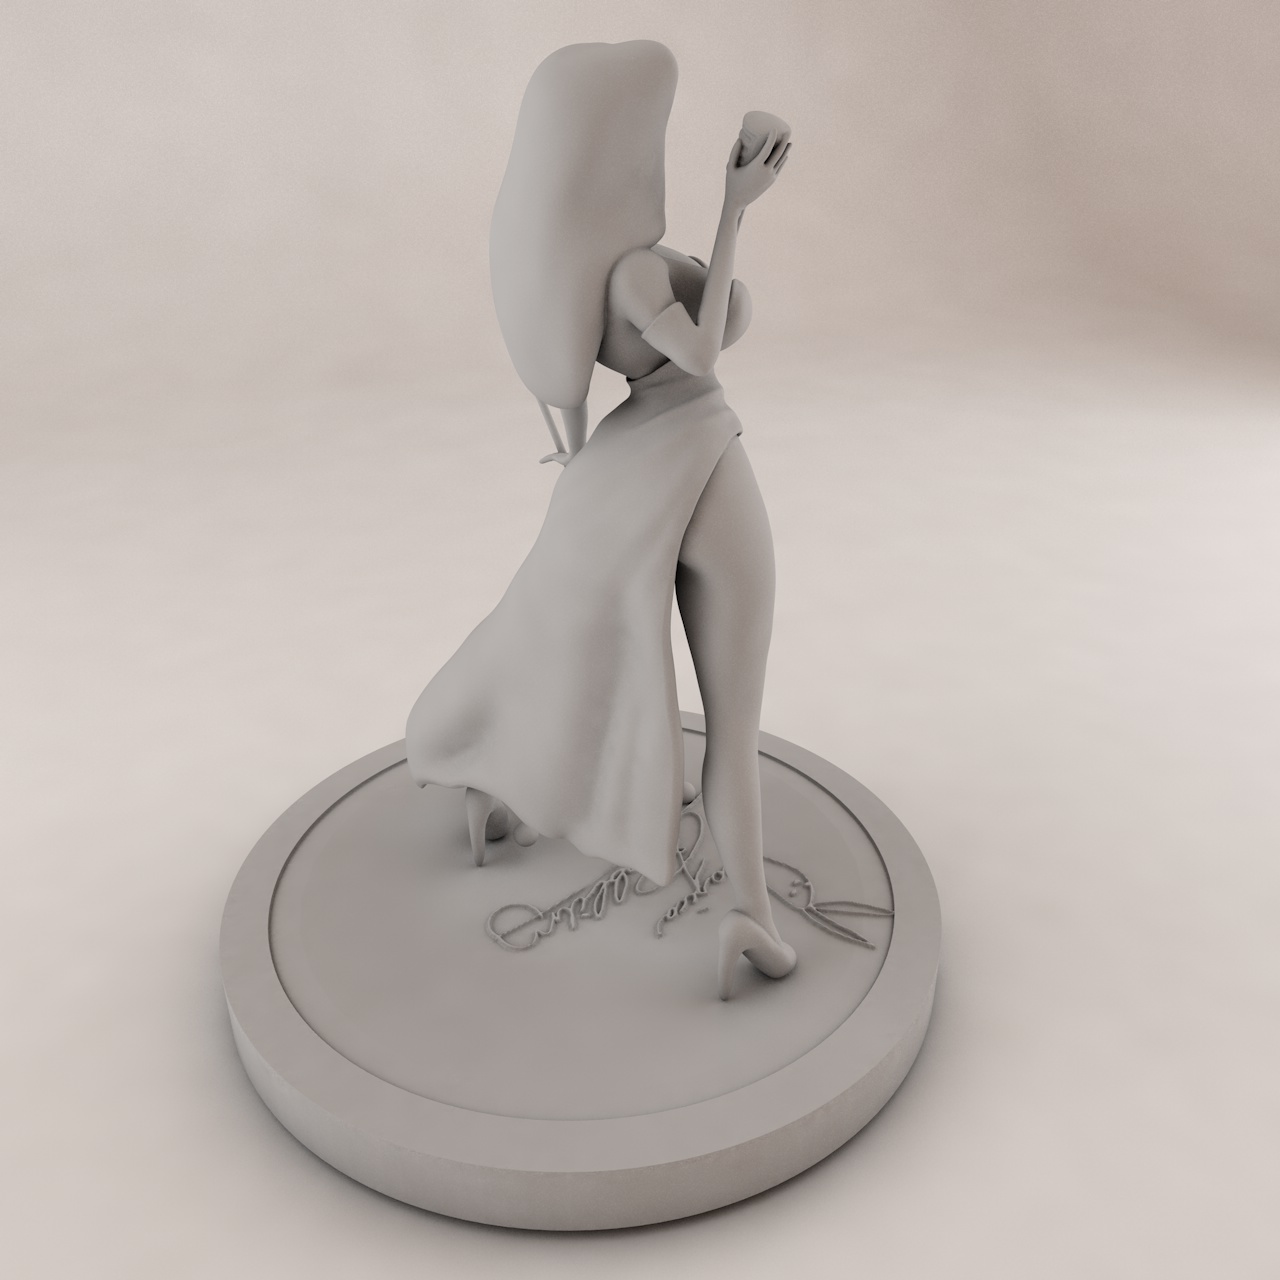 Modelo de impresión 3d Jessica Rabbit